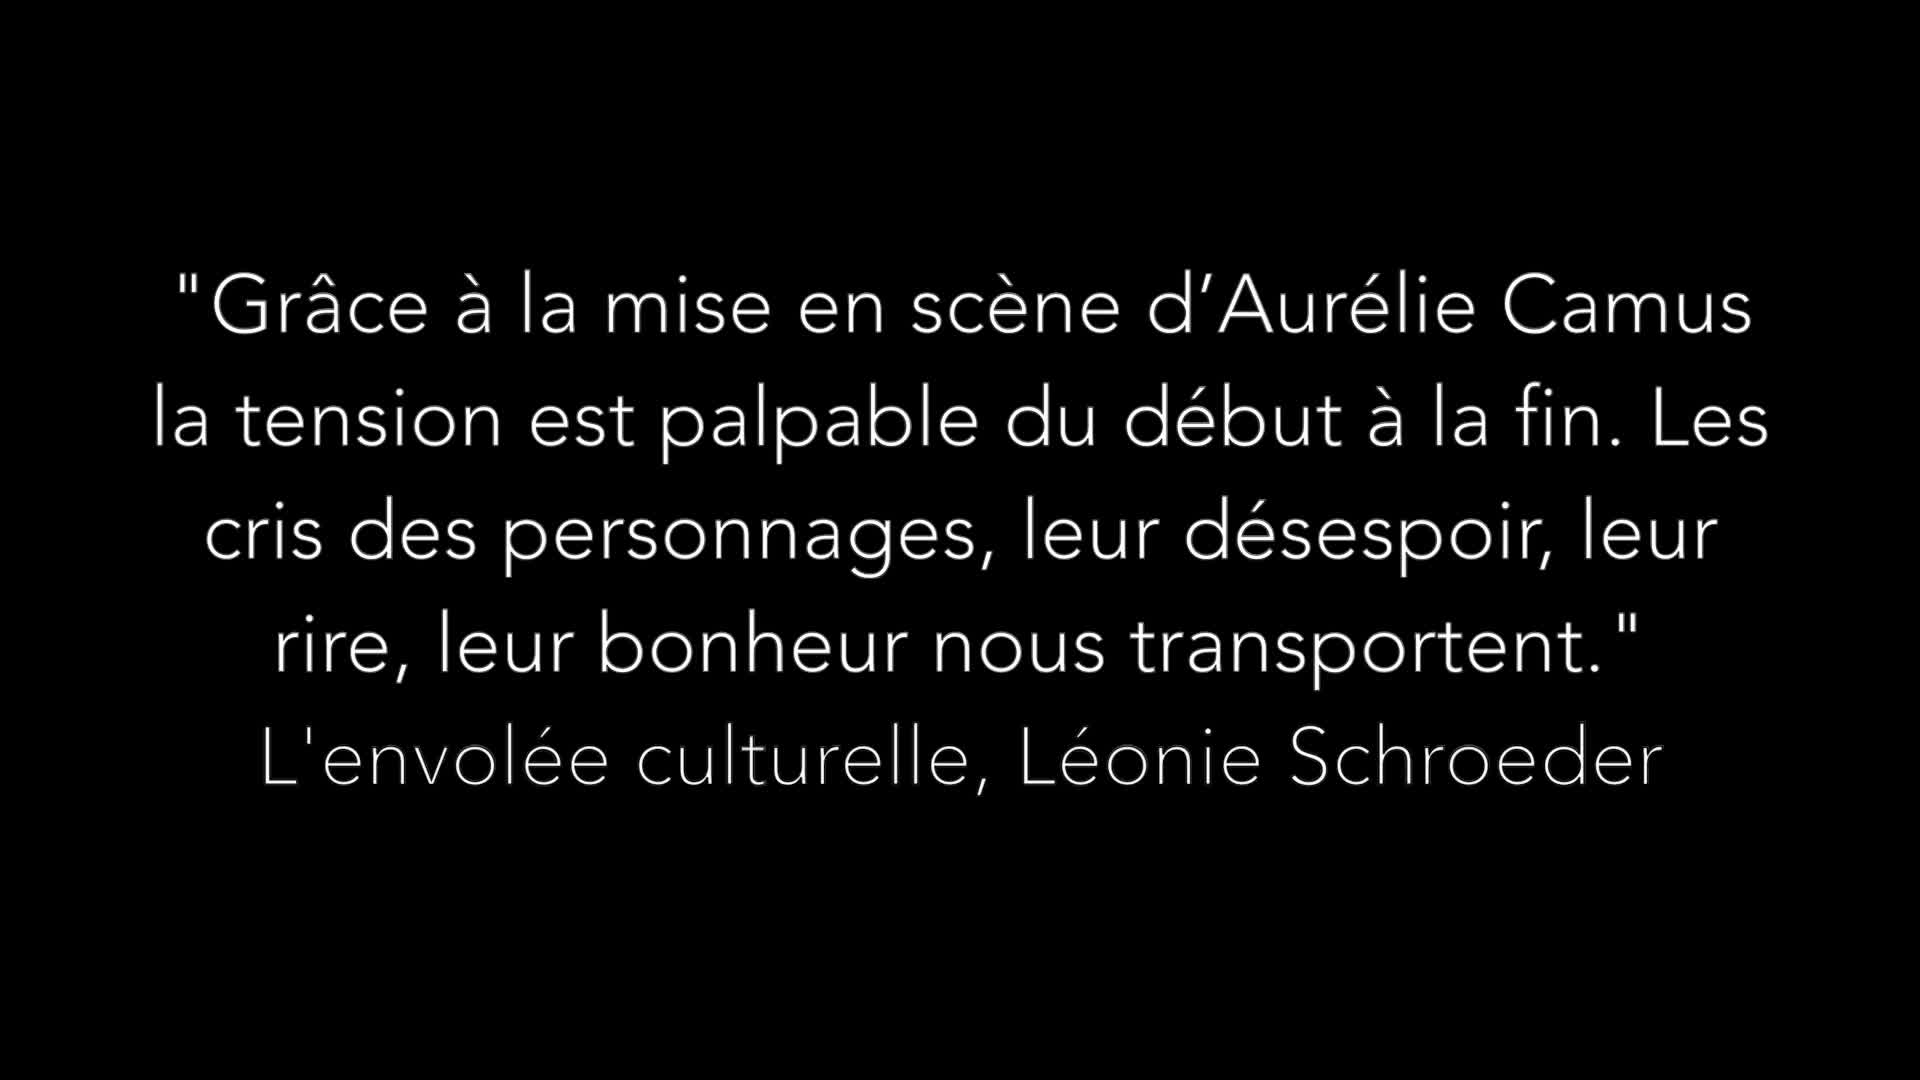 Vidéo "Les Justes" d'Albert Camus, m.e.s. Aurélie Camus - Teaser 2019